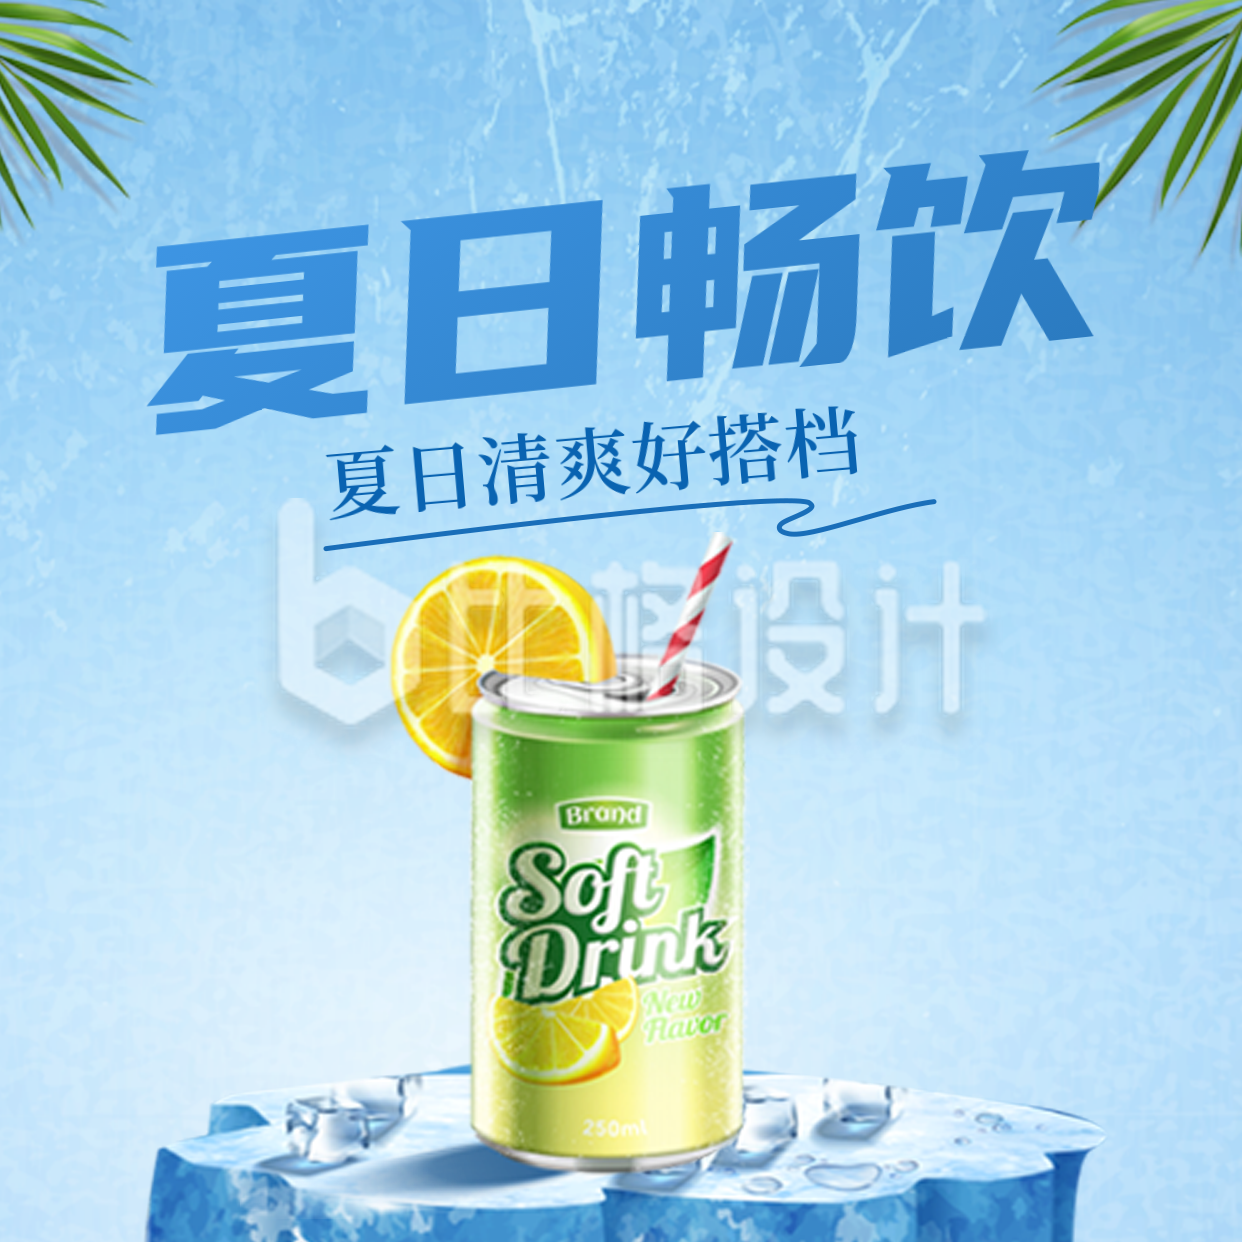 夏日饮品宣传方形海报